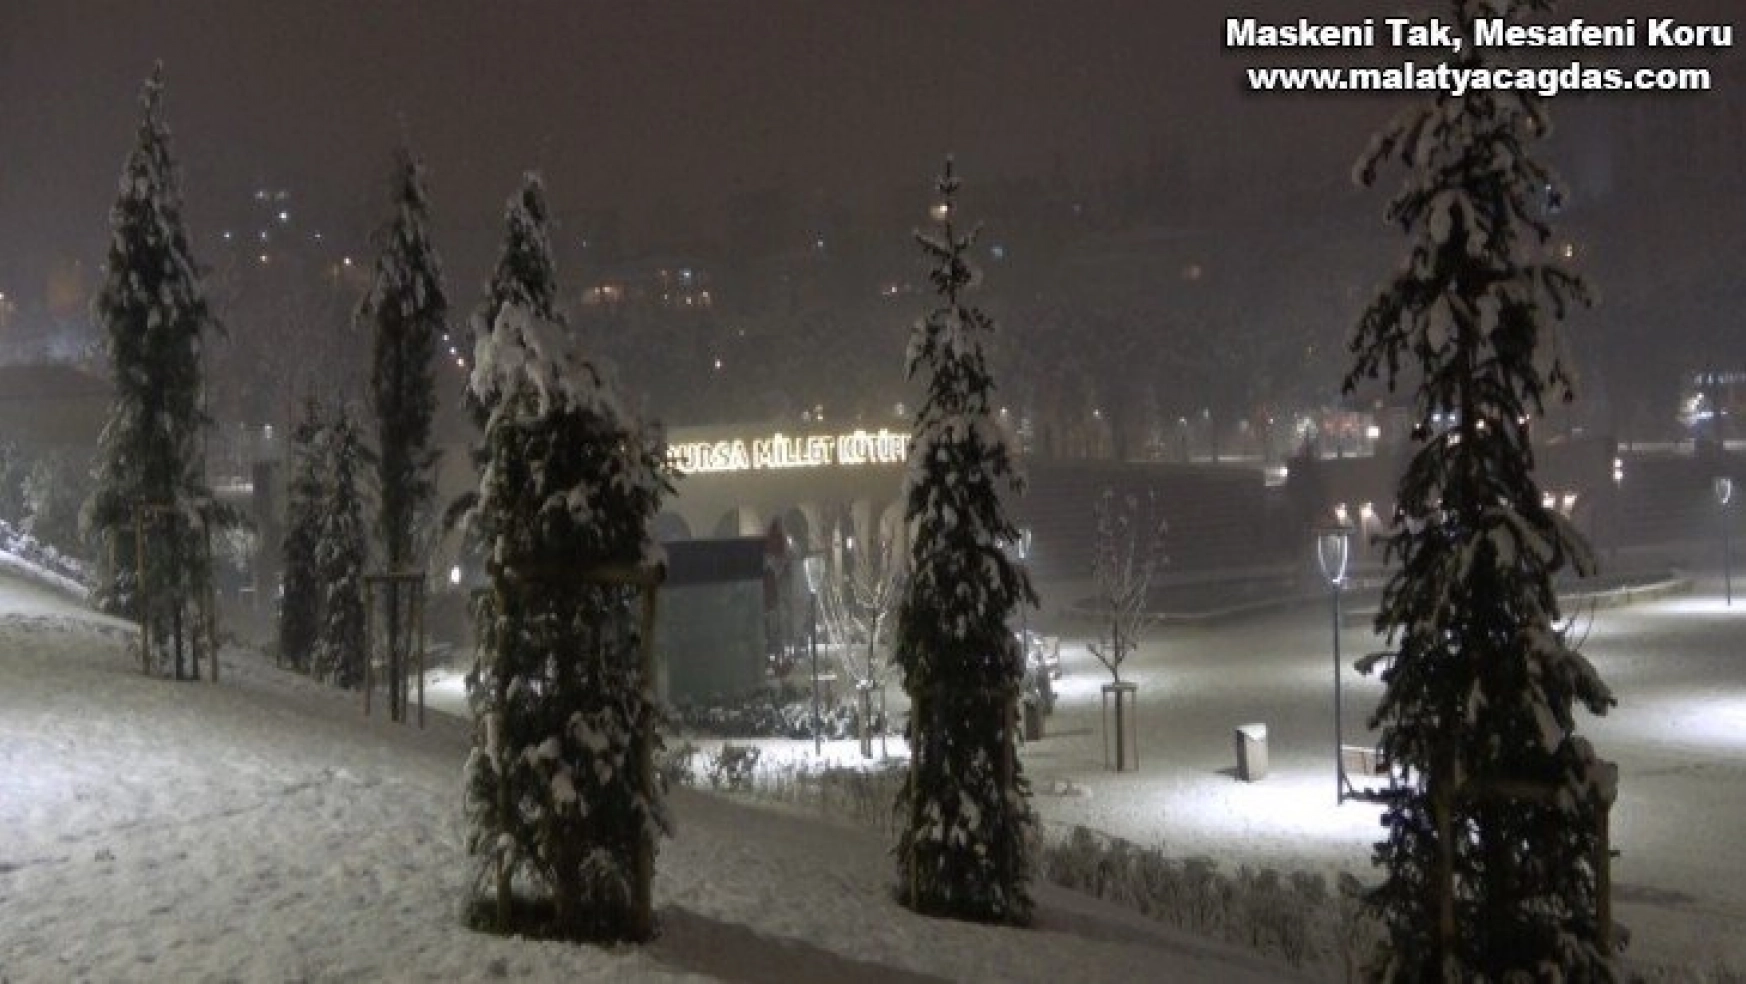 Bursa'da kar yağışının keyfini yine çocuklar çıkardı